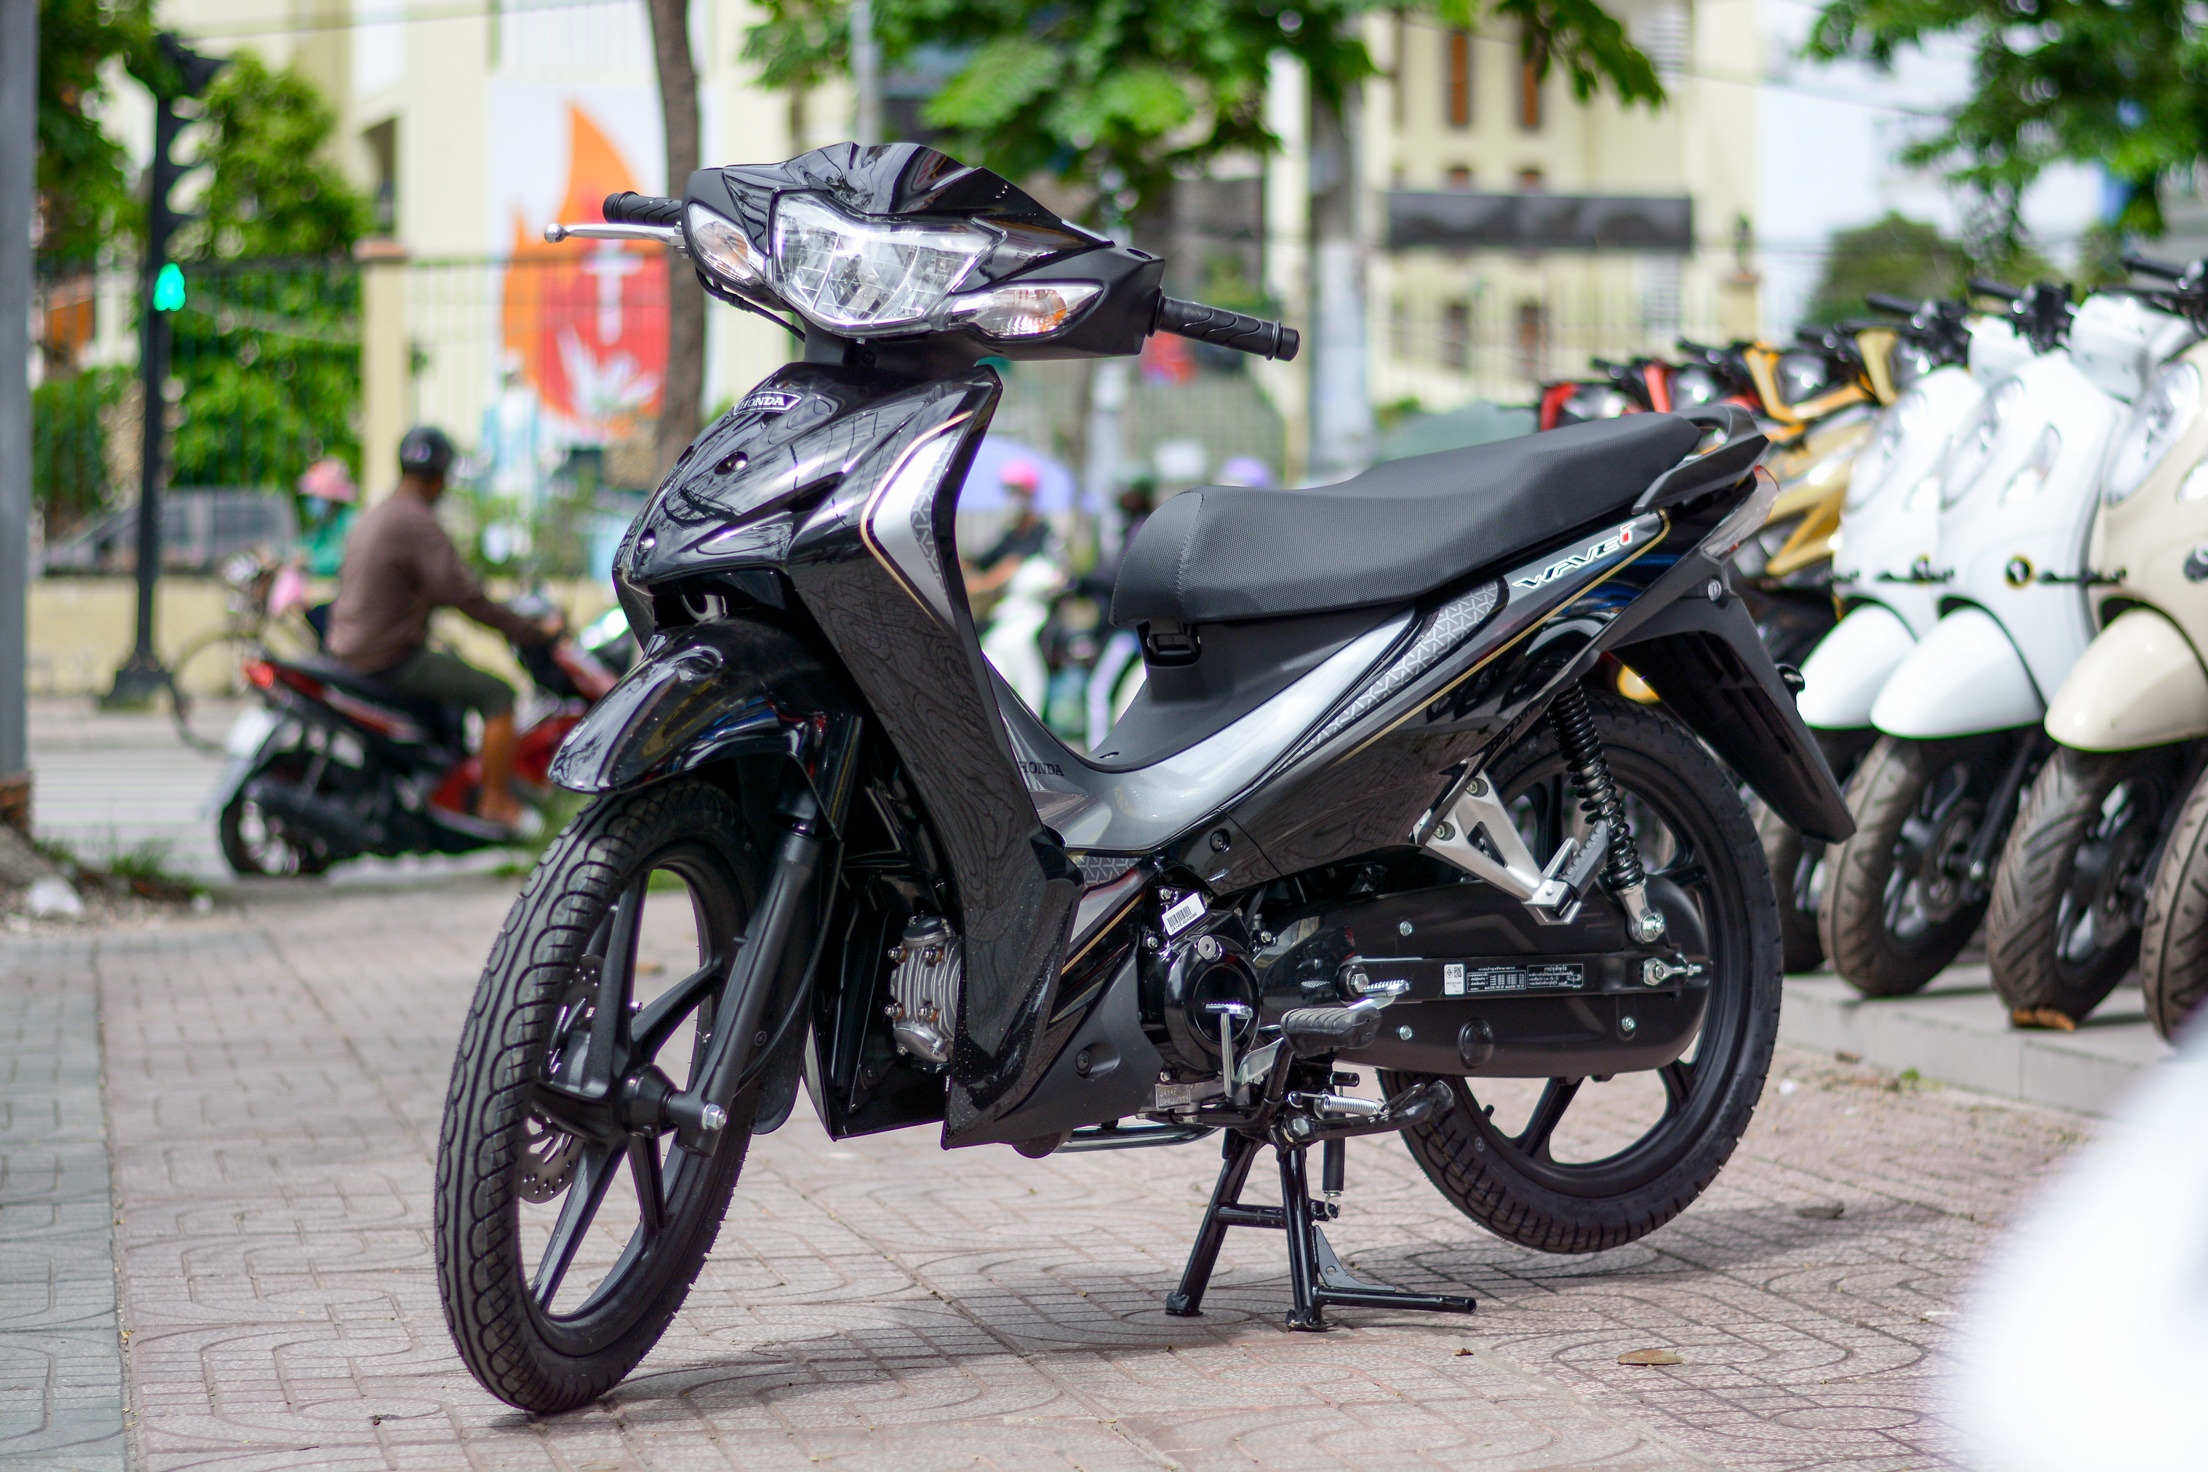 Chi tiết Honda Wave 110i tại Việt Nam - giá bán tương đương SH 125i - ảnh 2